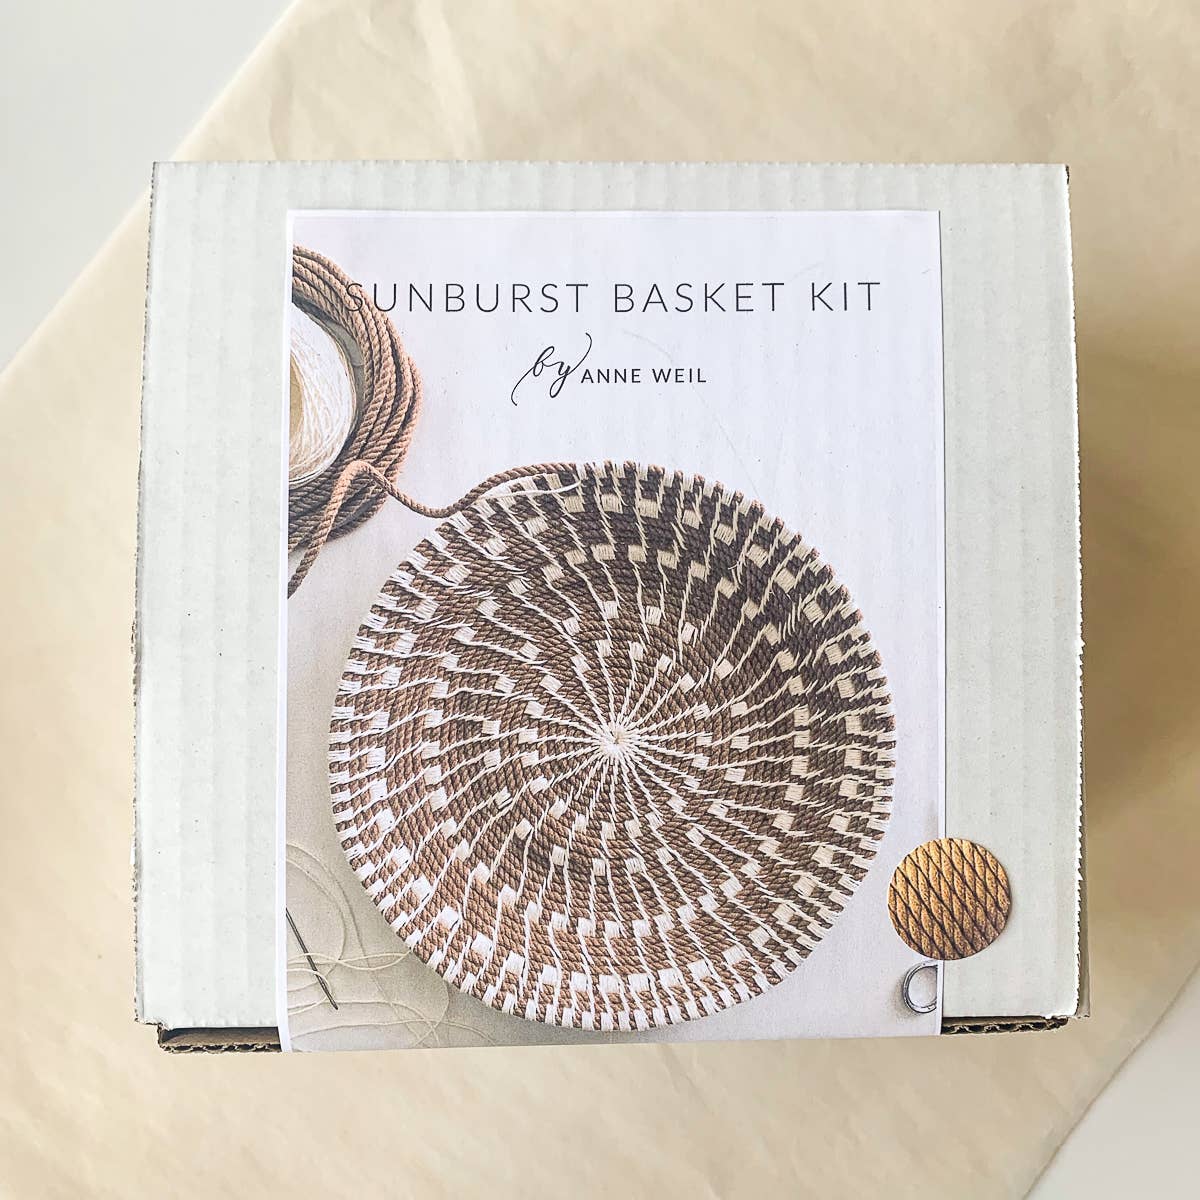 Sunburst Basket Kit: Terra Cotta